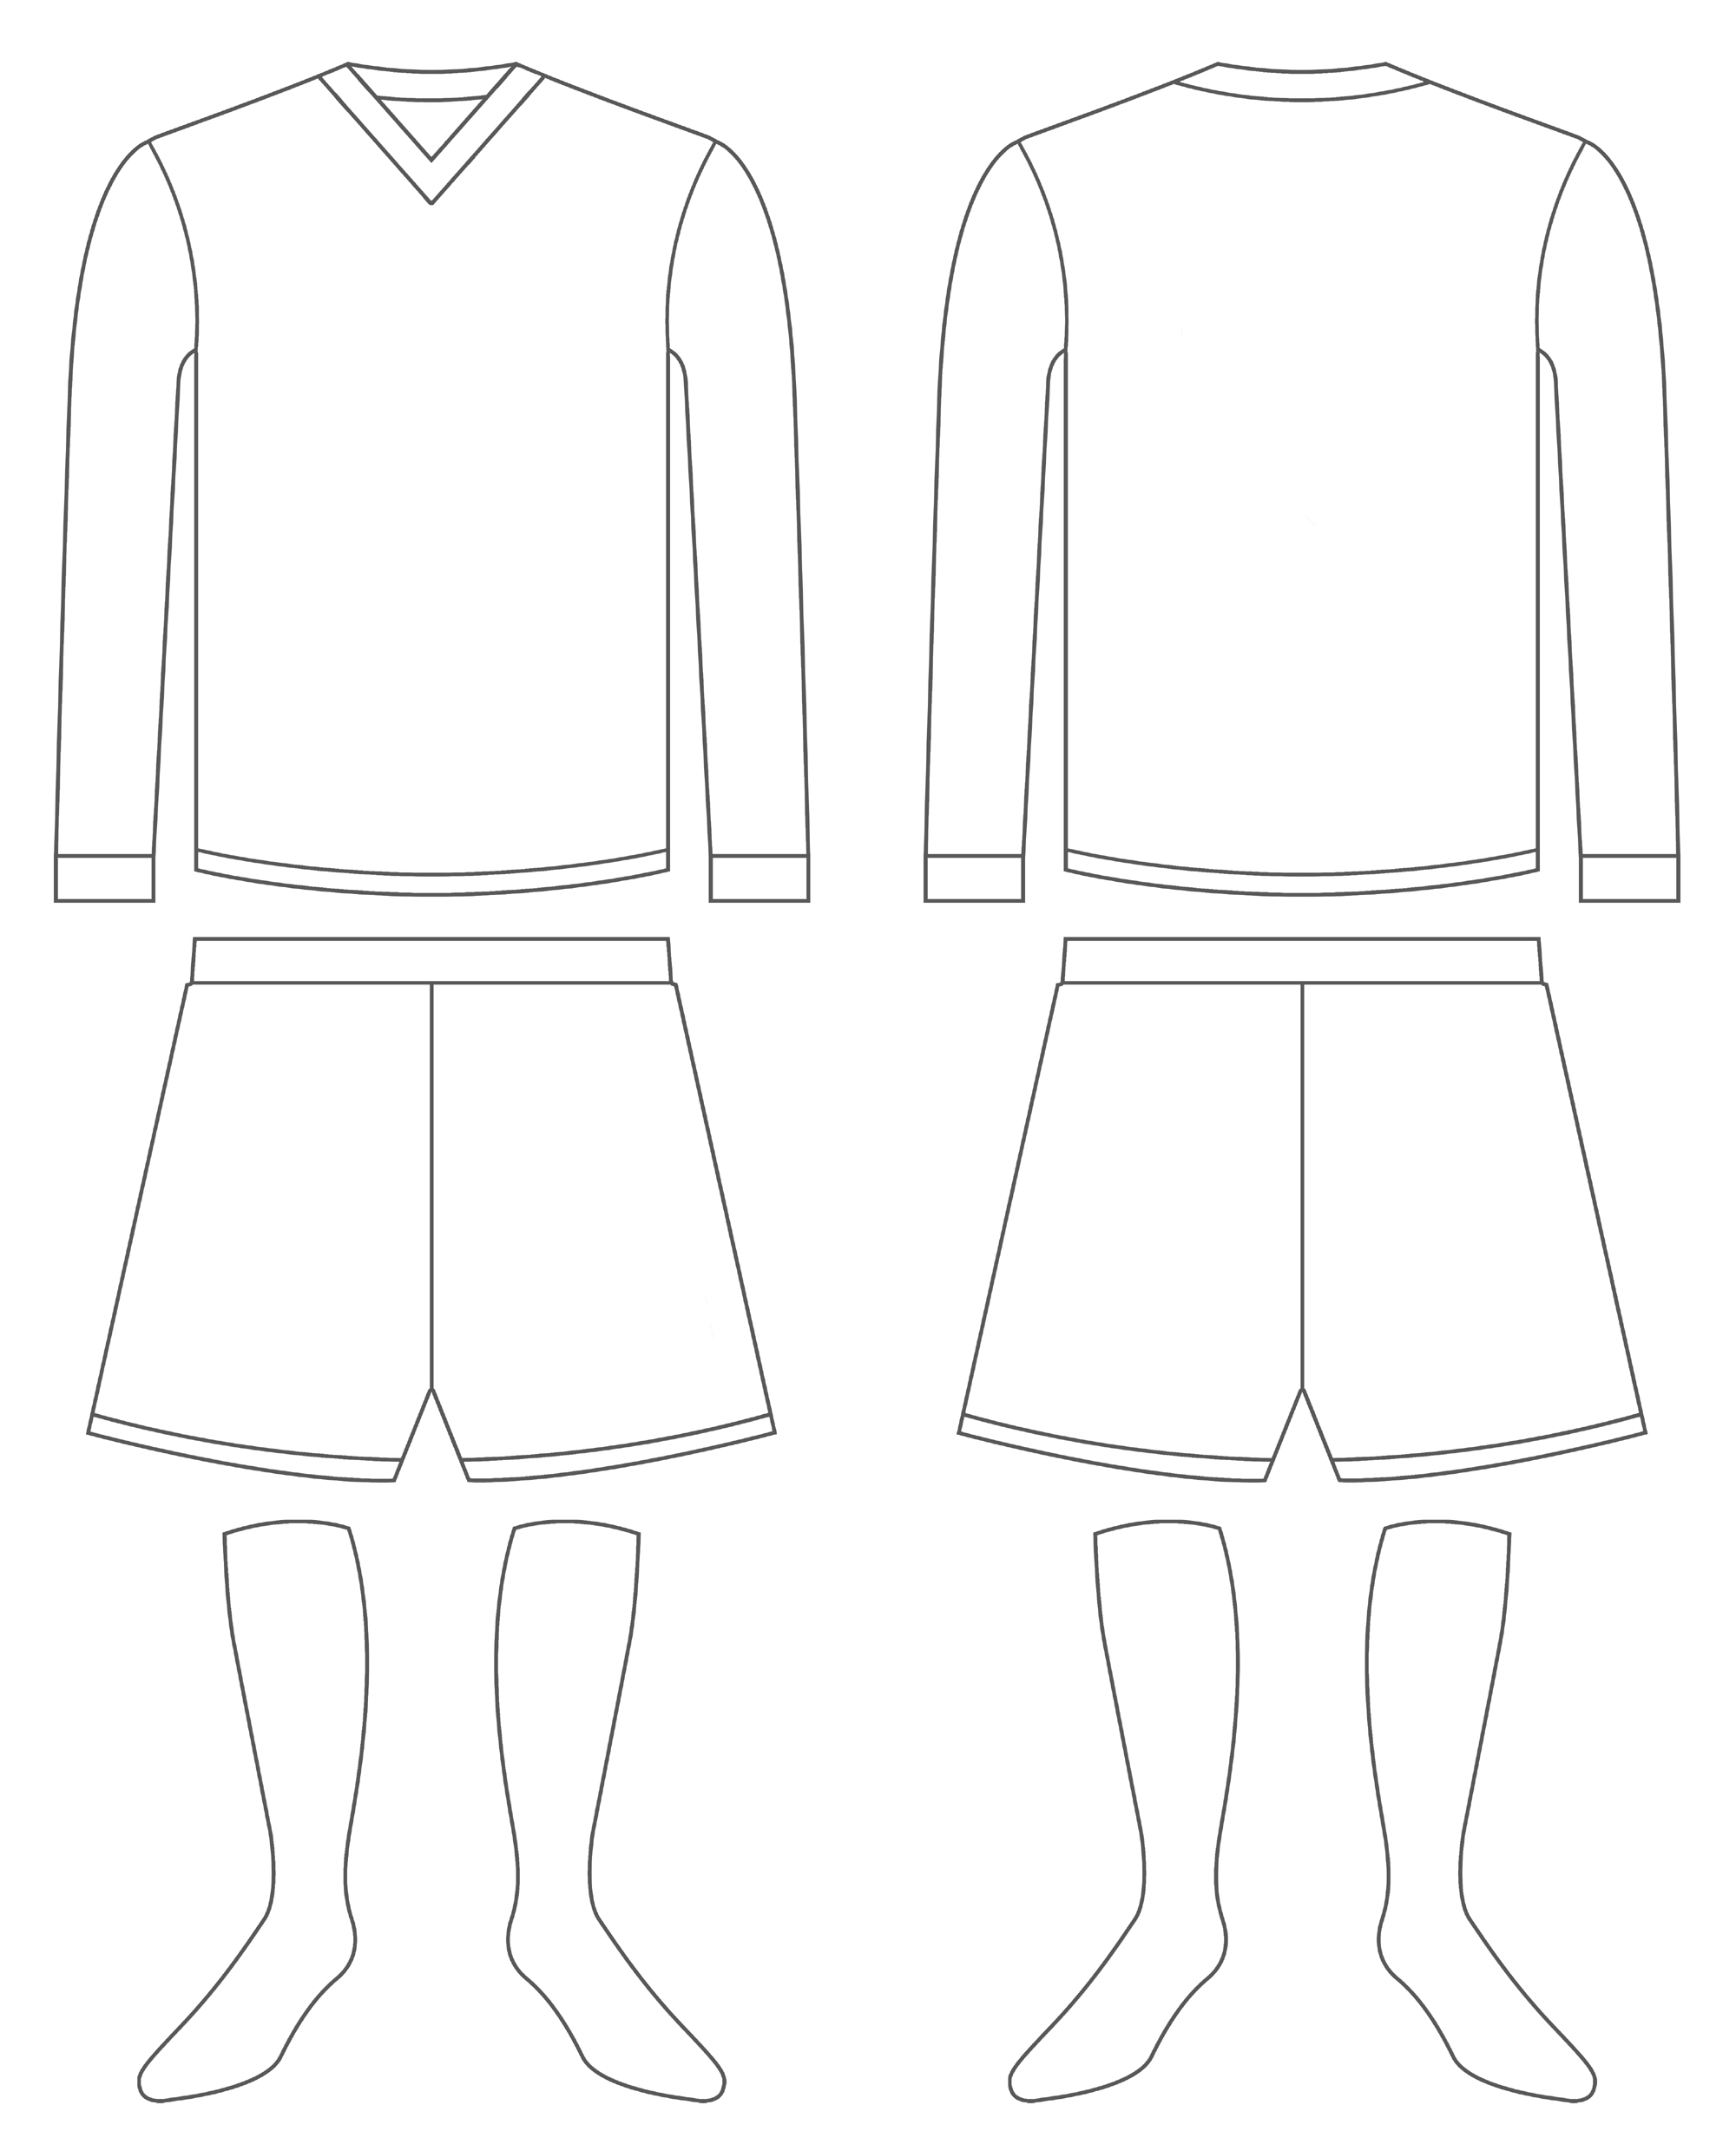 design own football kit